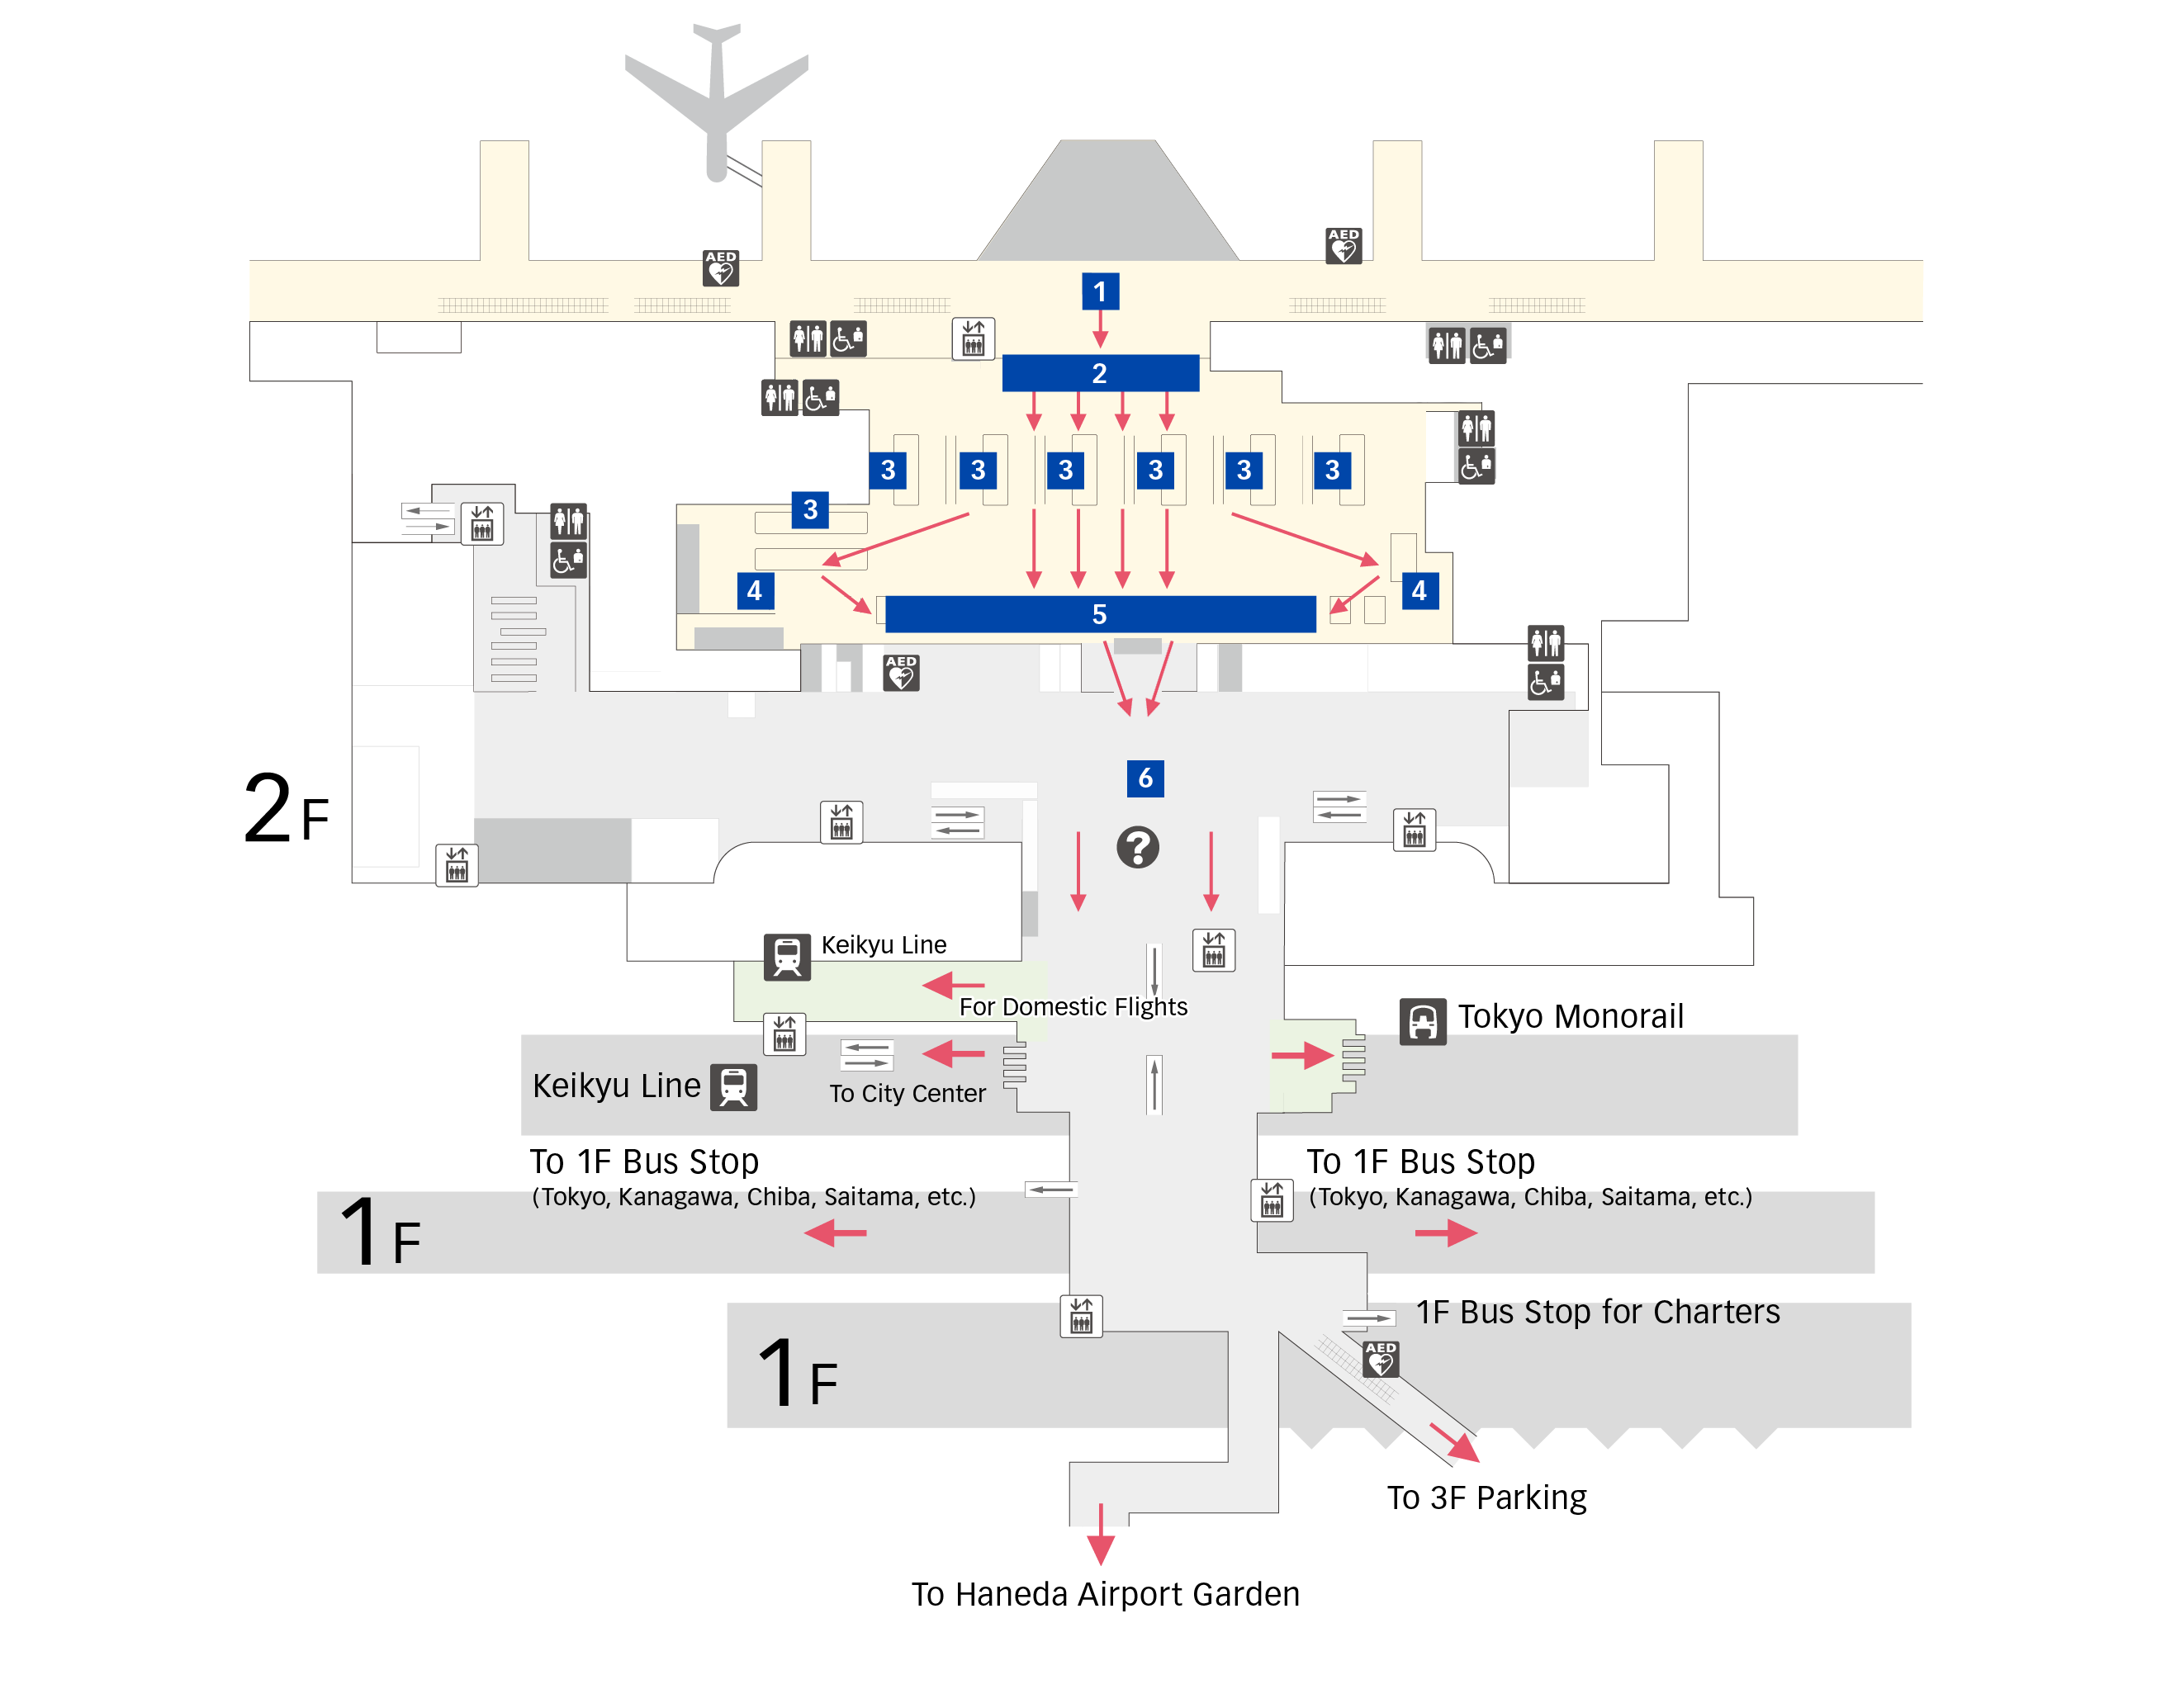 Arrival Procedures Terminal 3 Floor Map